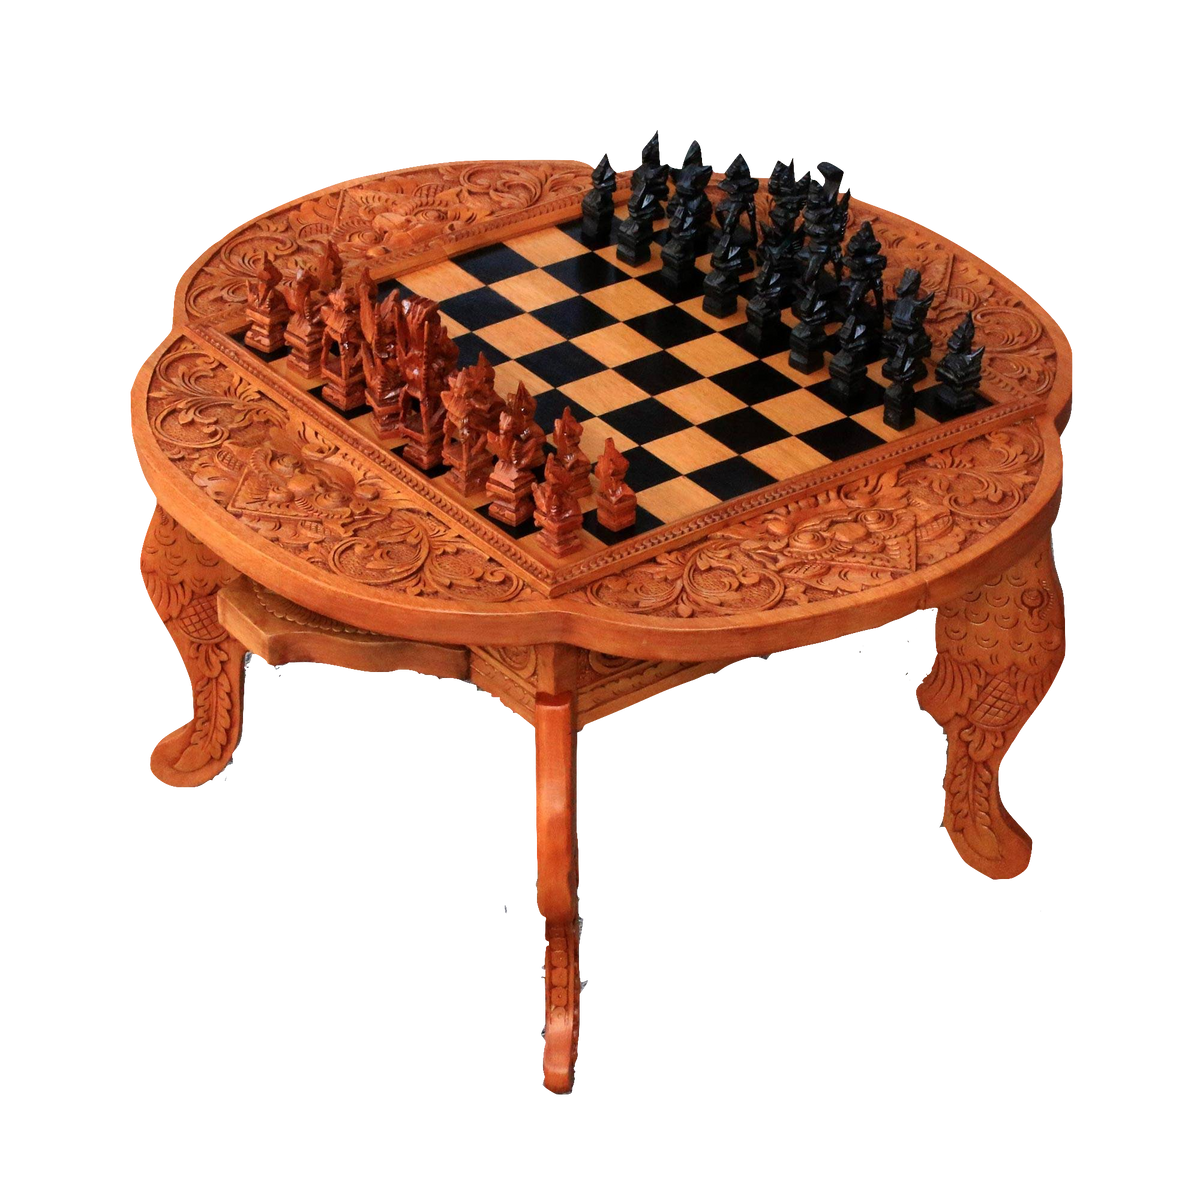 Paradise Chess Set in Kepelan Wood